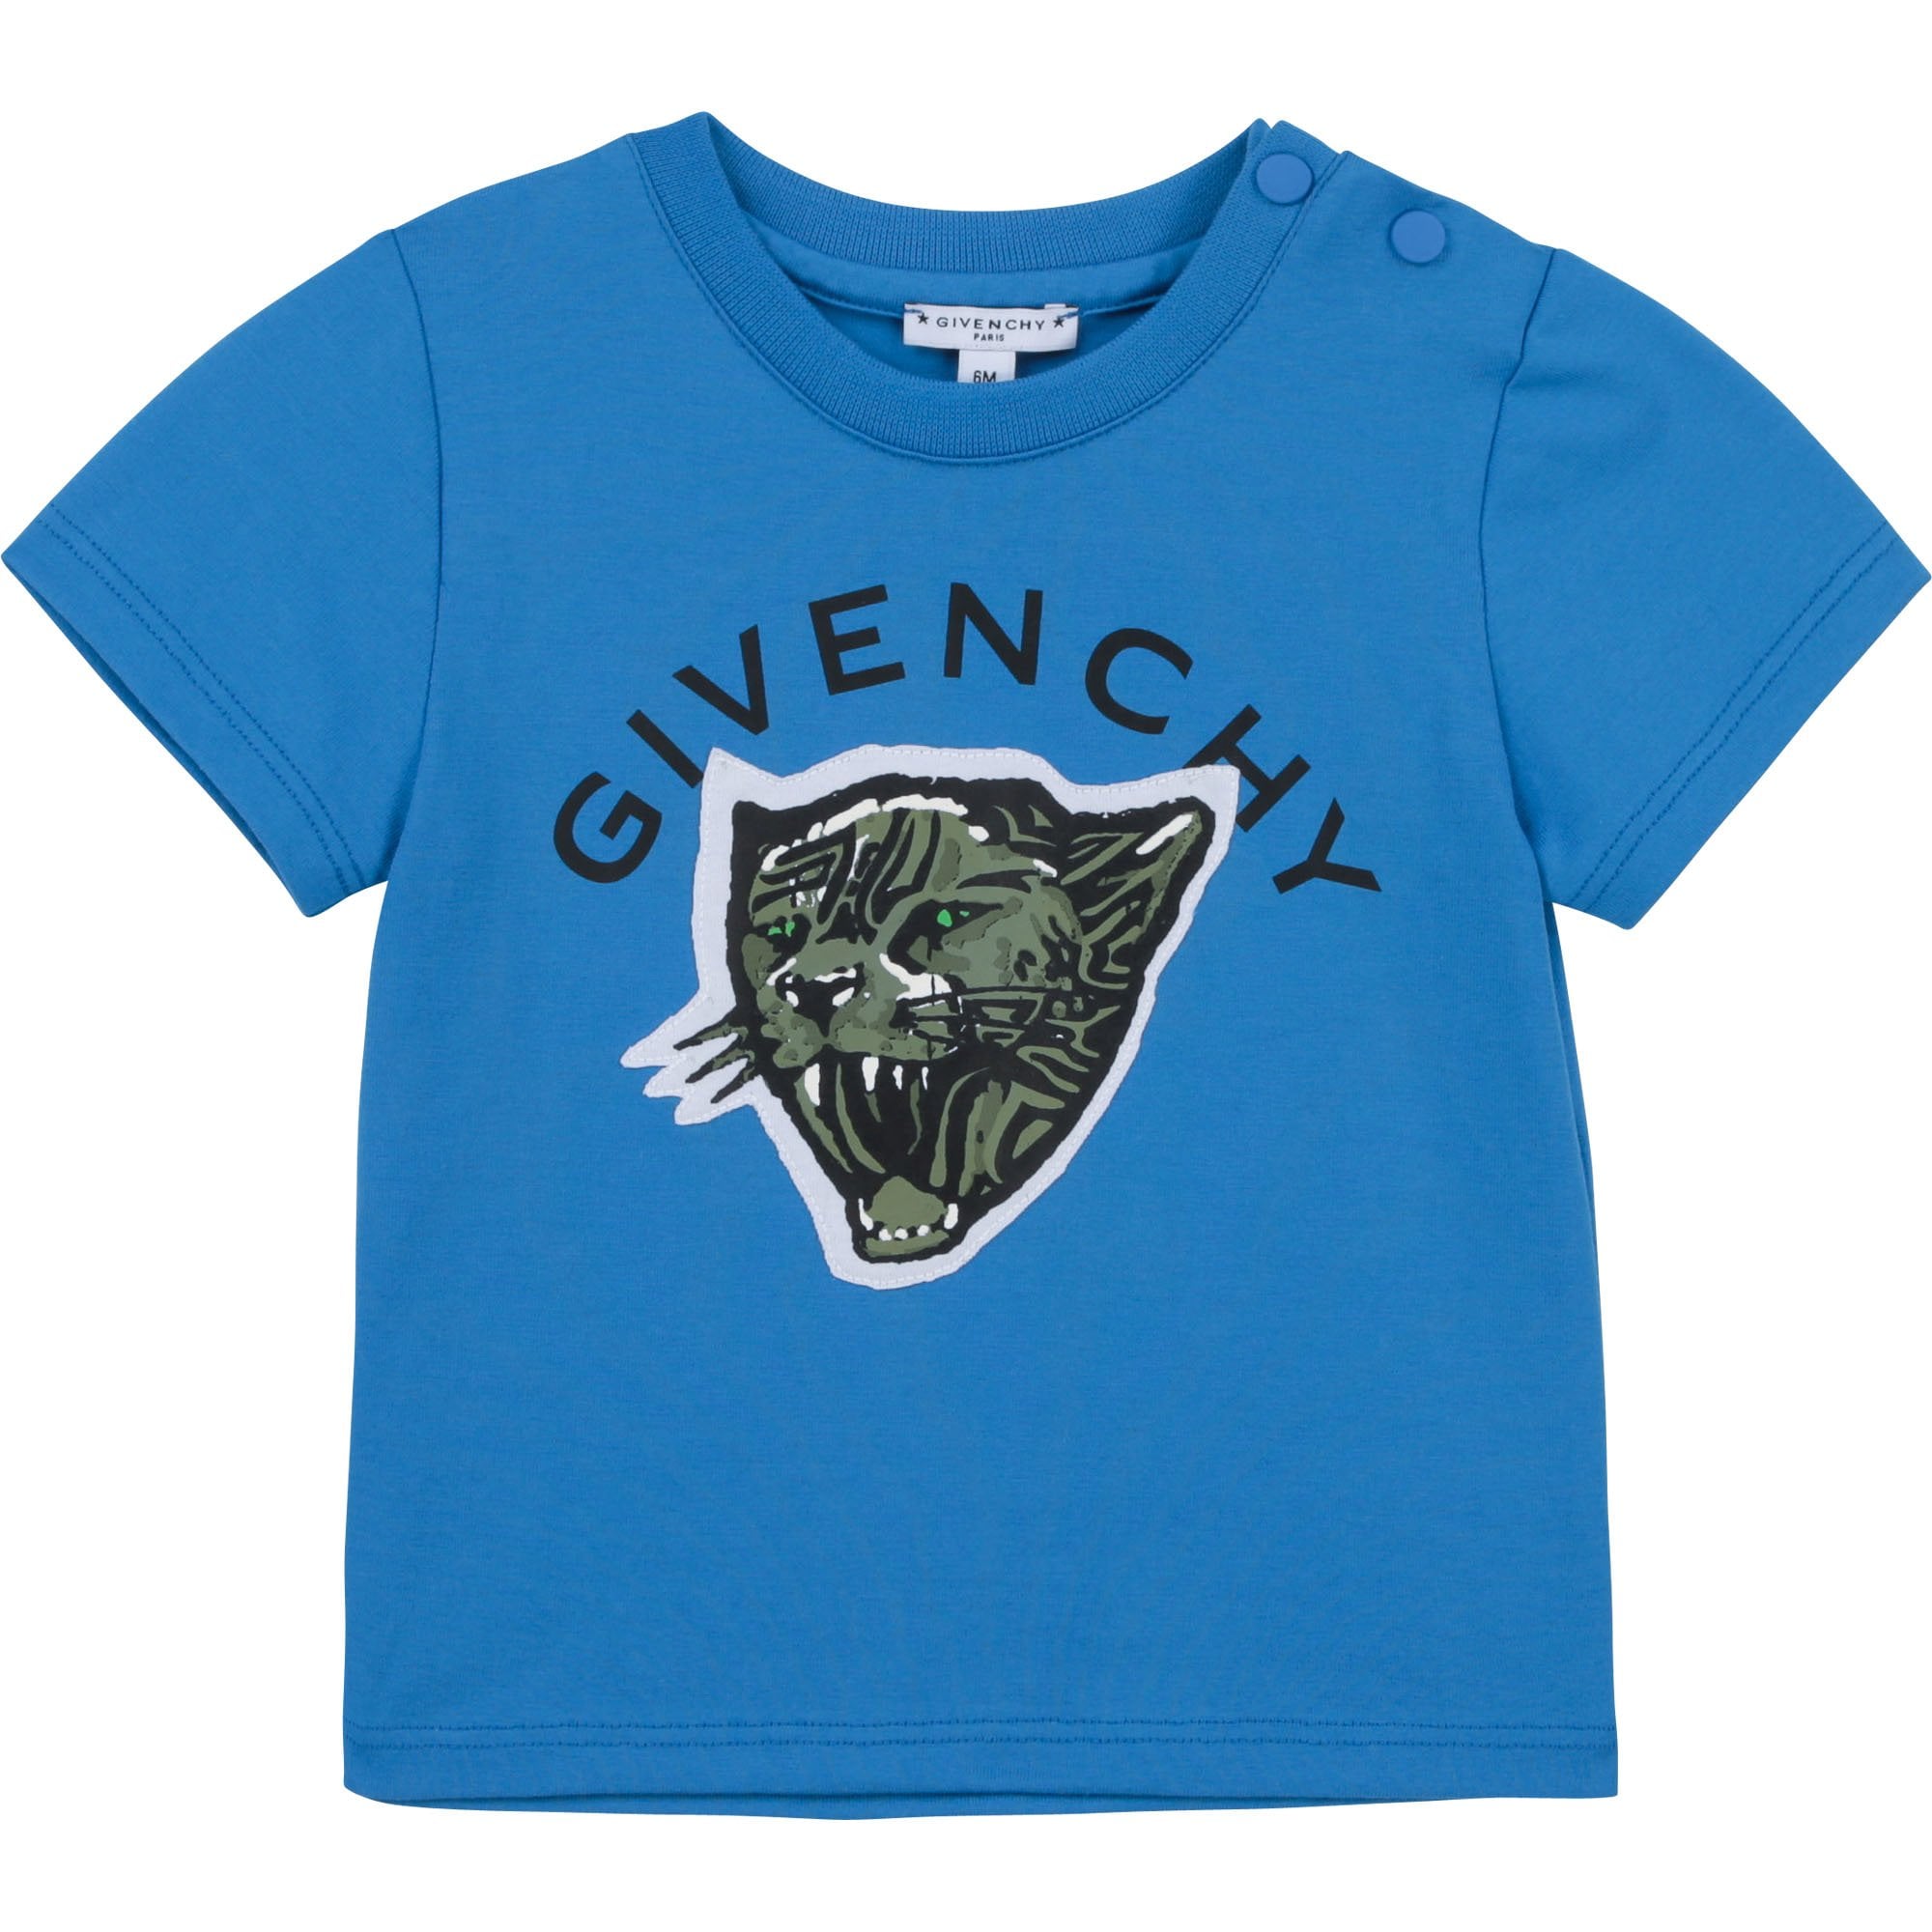 Givenchy Boys Tiger Logo T-shirt Blue - BLUE 2Y